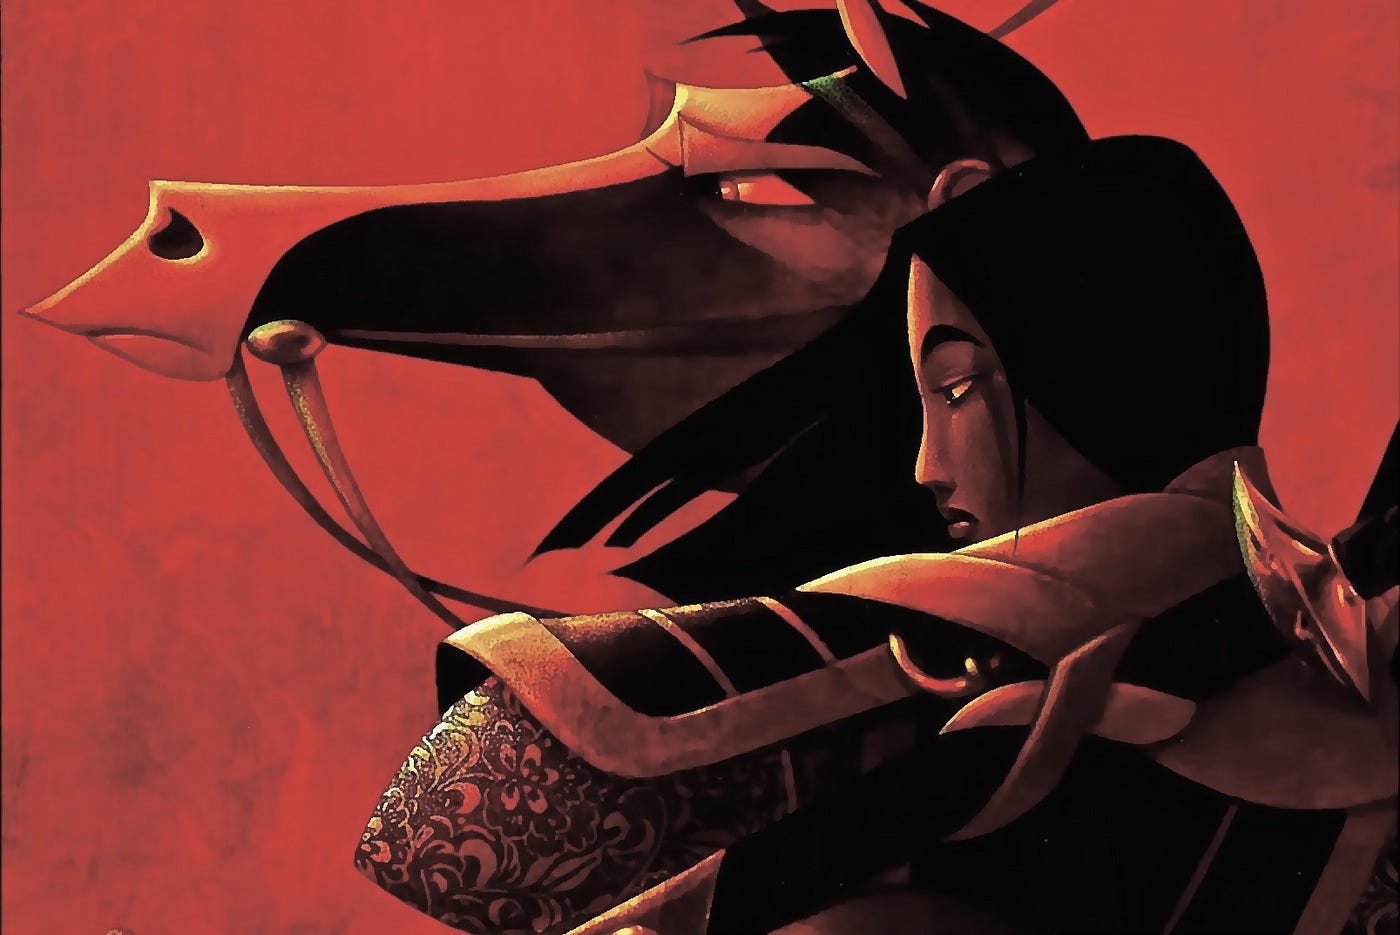 Mulan: Badass warrior or devoted daughter? 